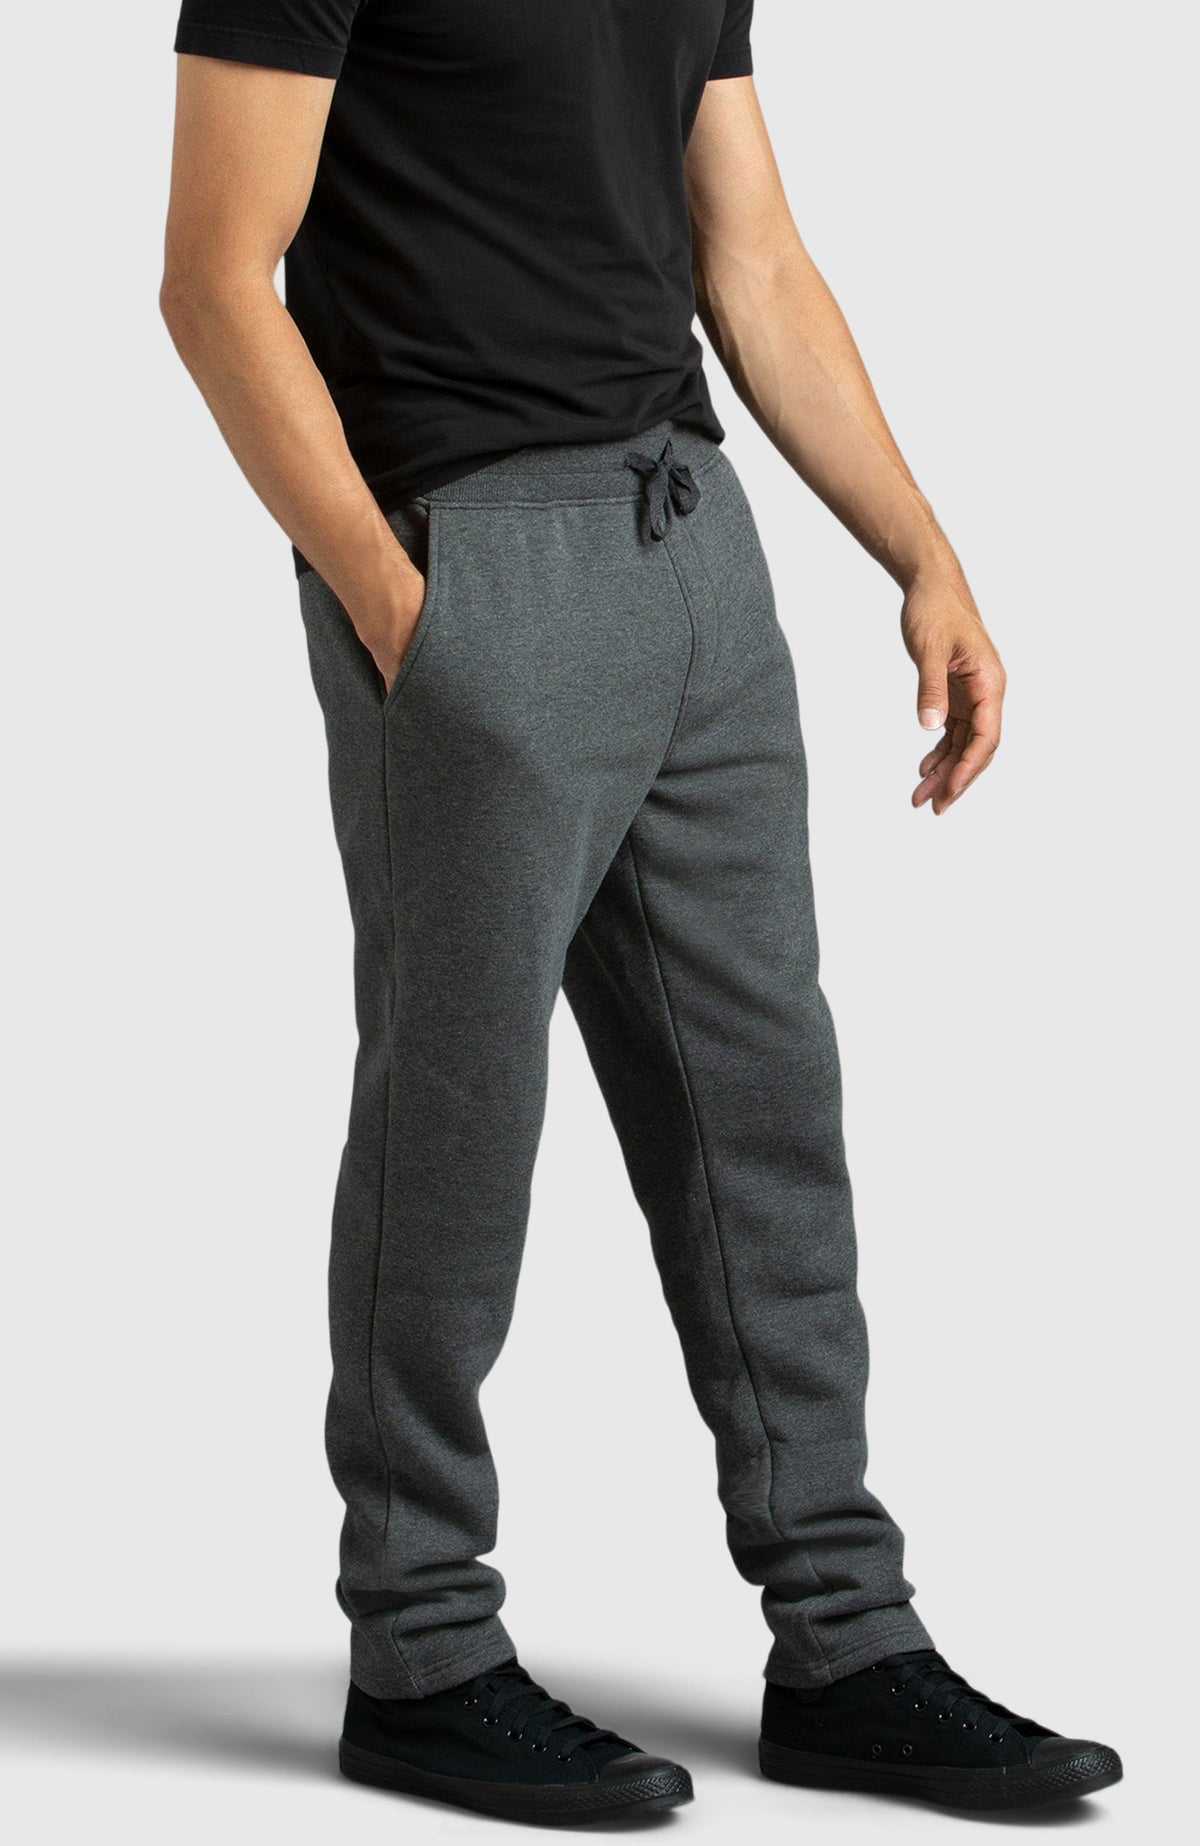 Grey Straight Leg Fleece Pant for Men - Side